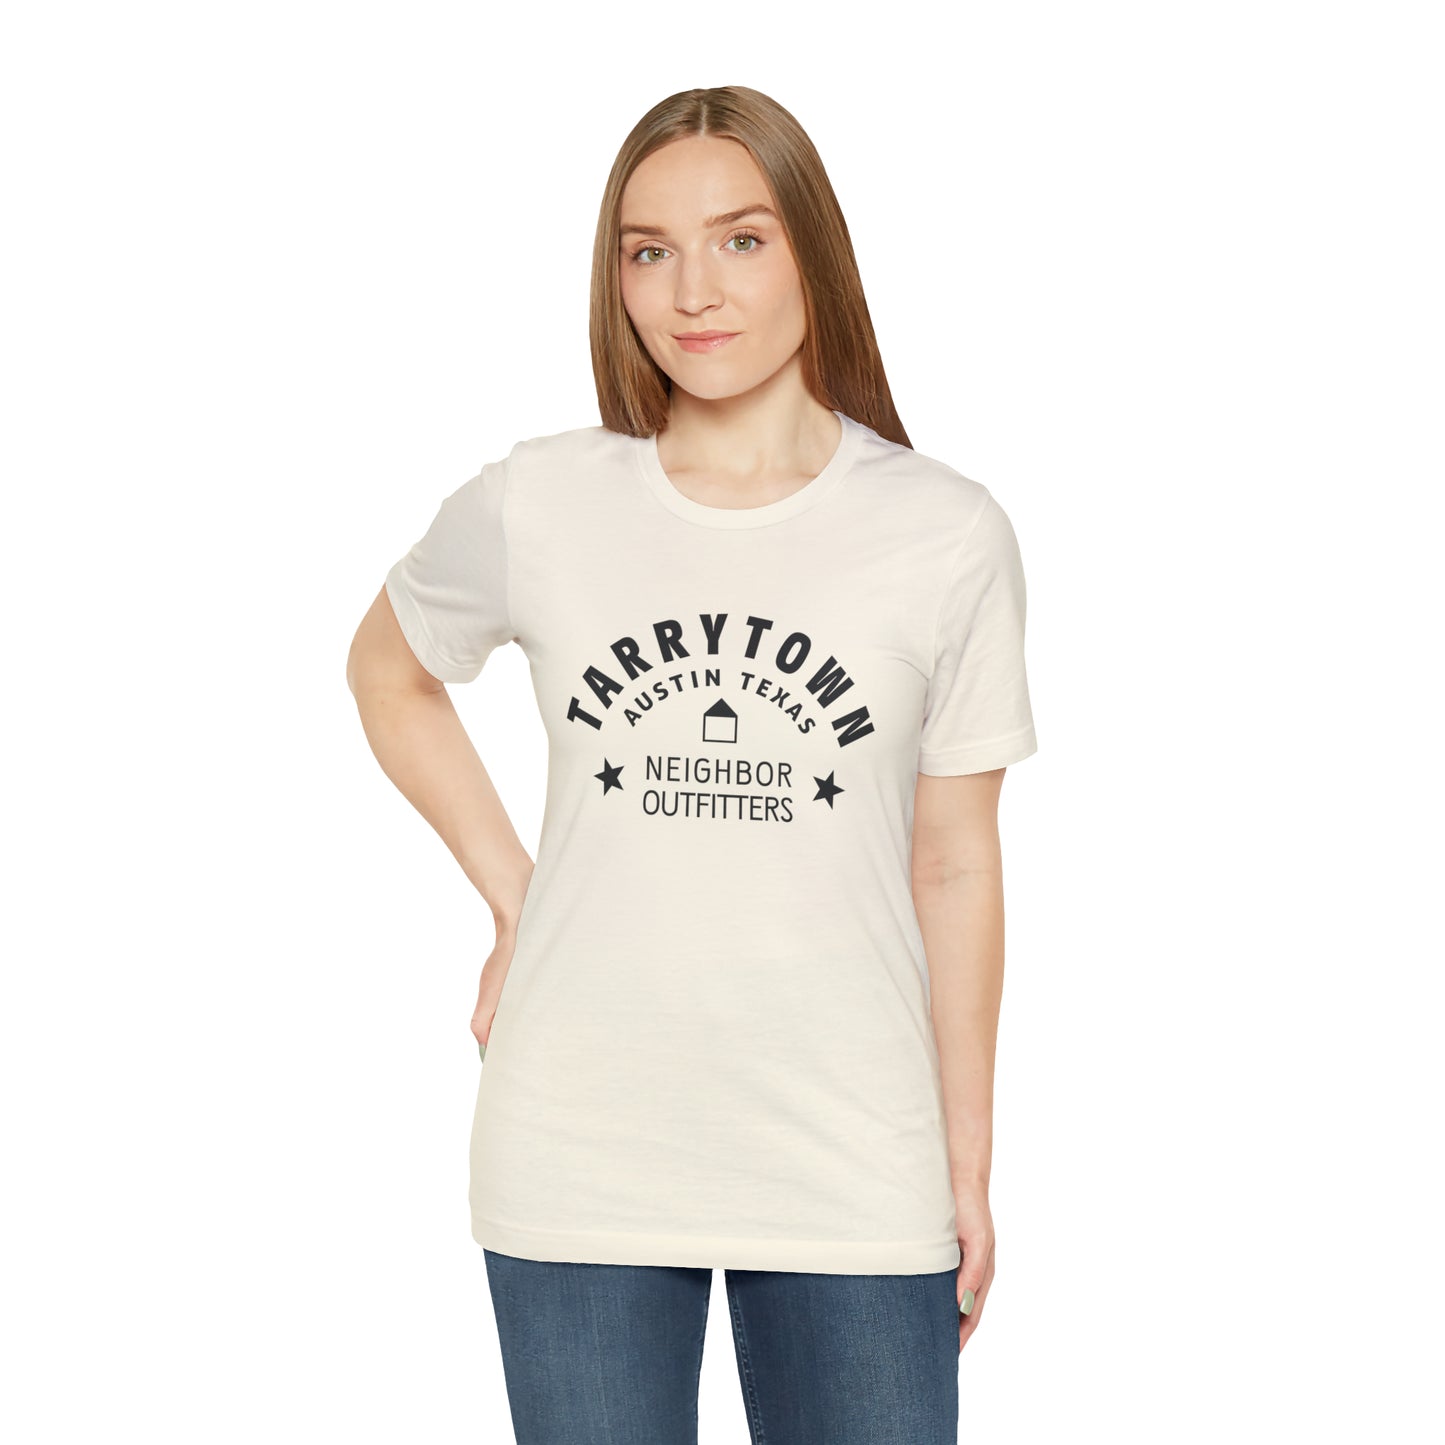 Tarrytown T-Shirt - "Neighborhood Stars"